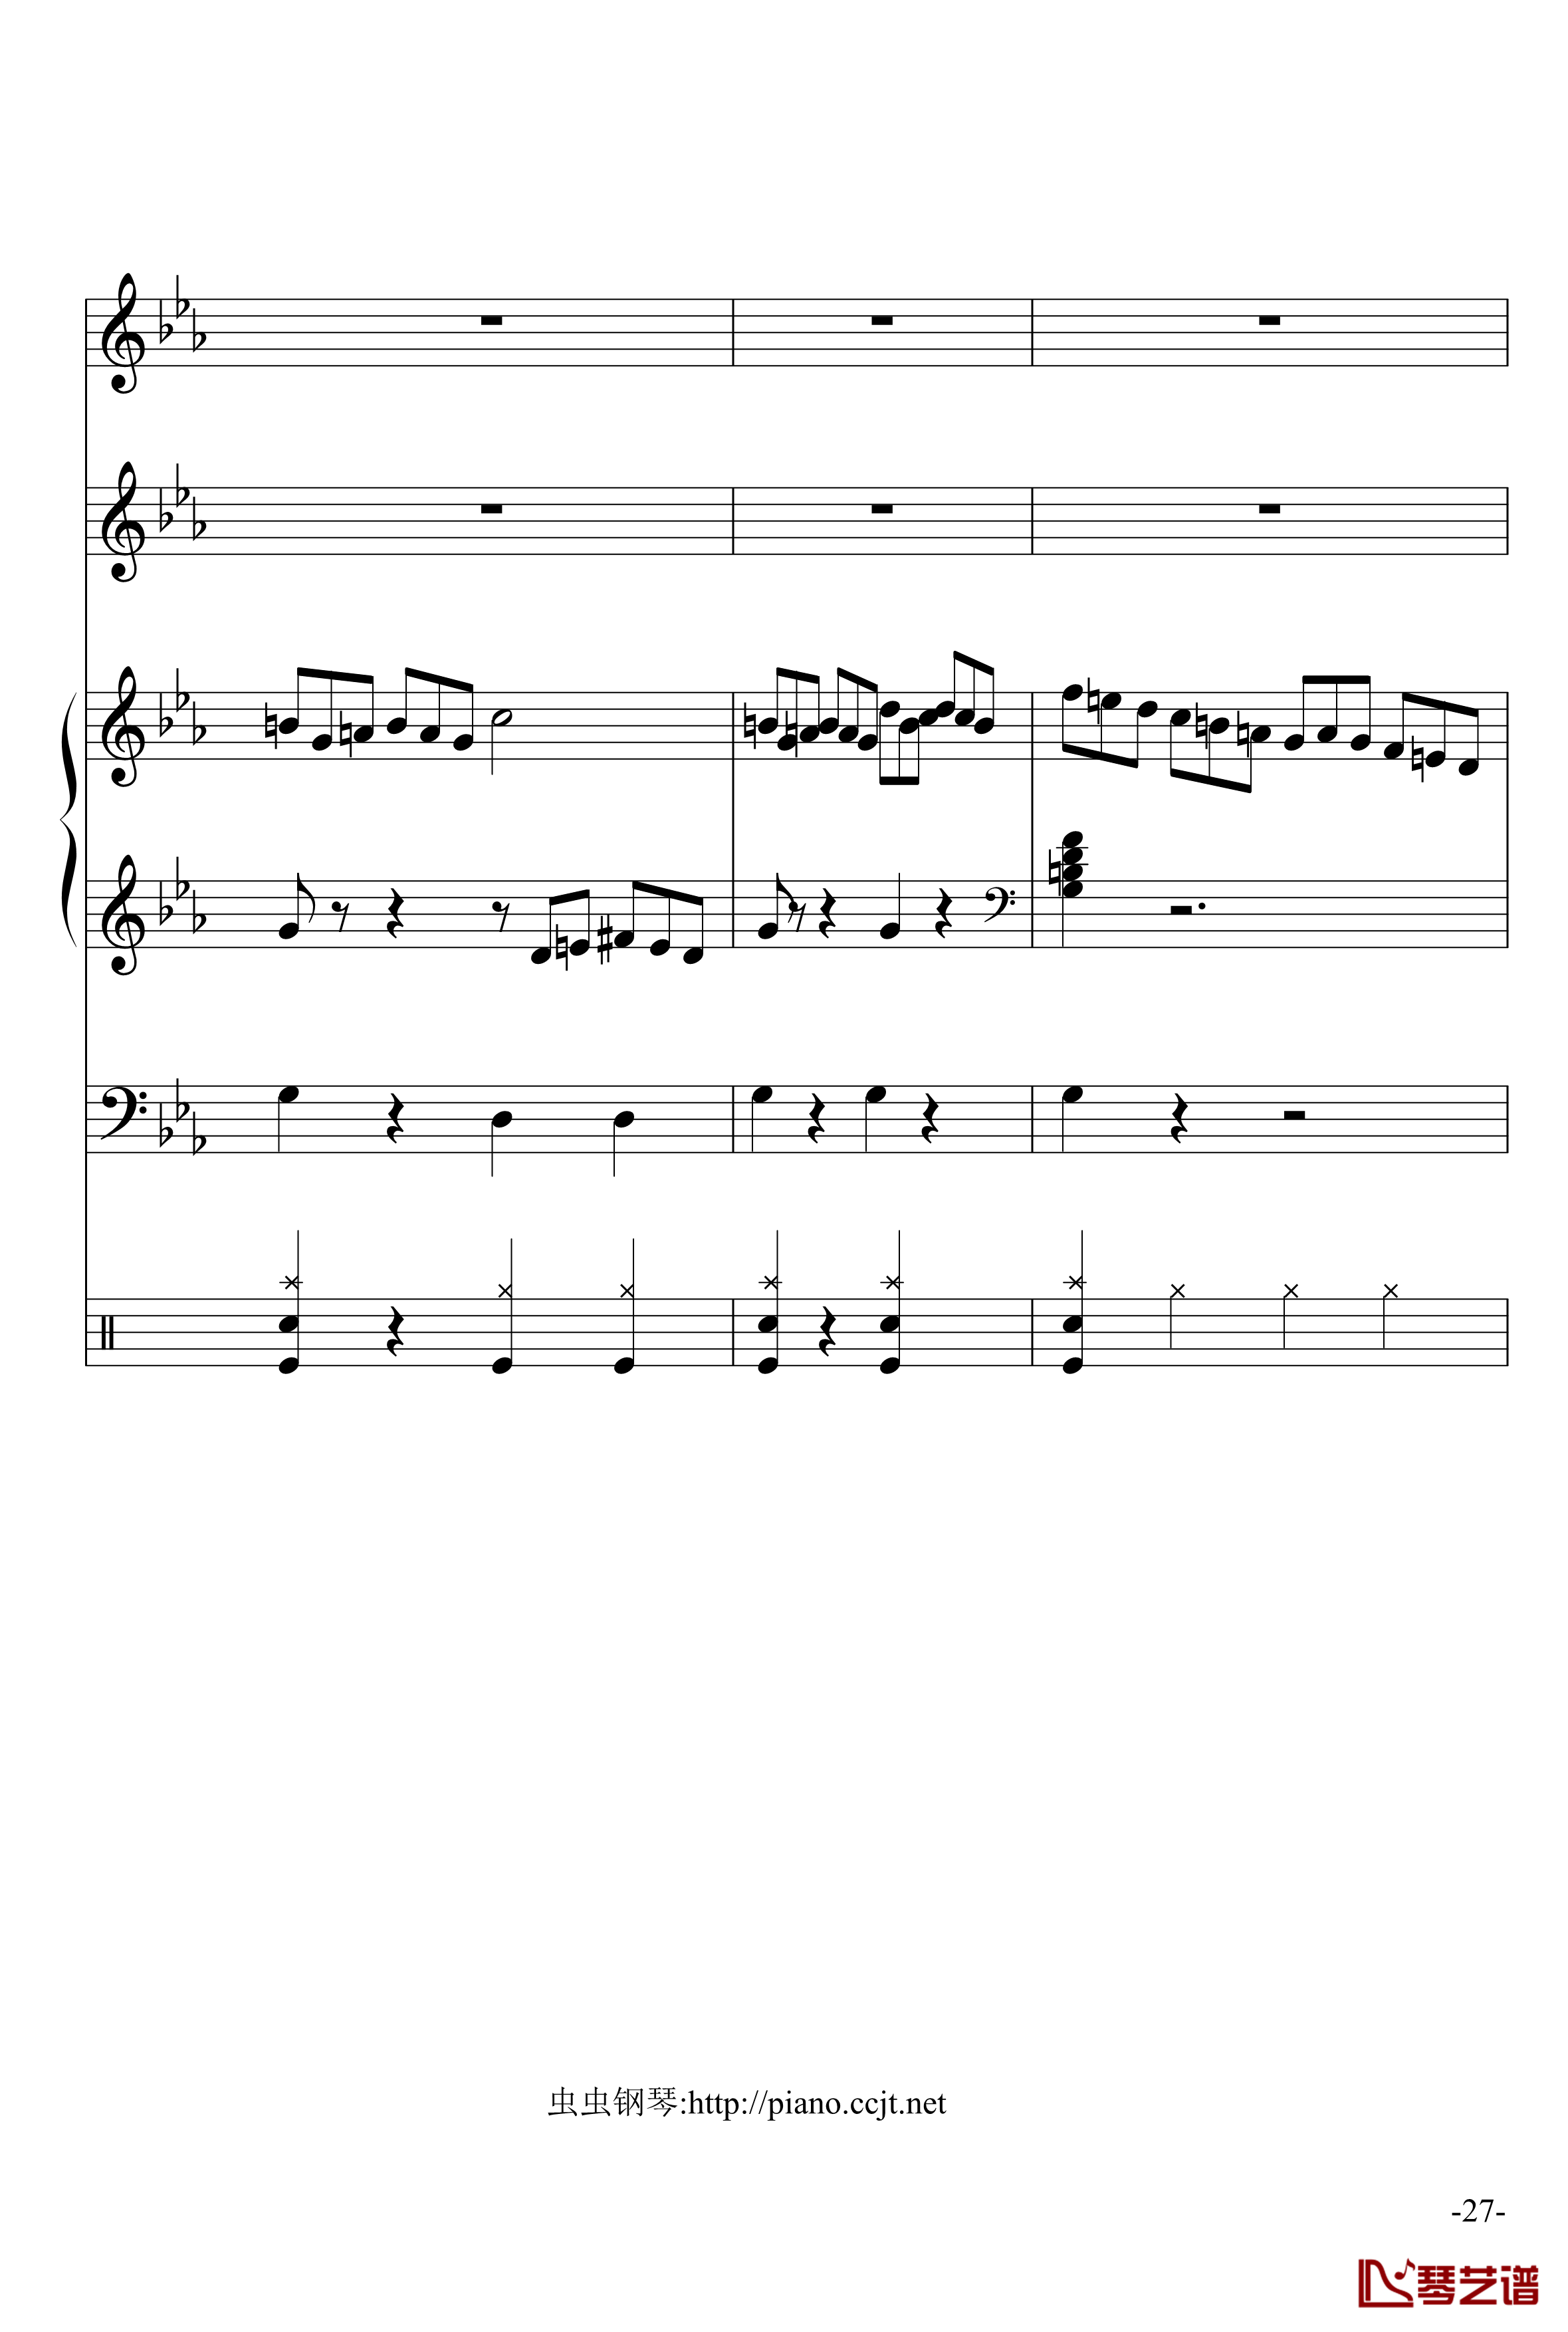 悲怆奏鸣曲钢琴谱-加小乐队-贝多芬-beethoven27